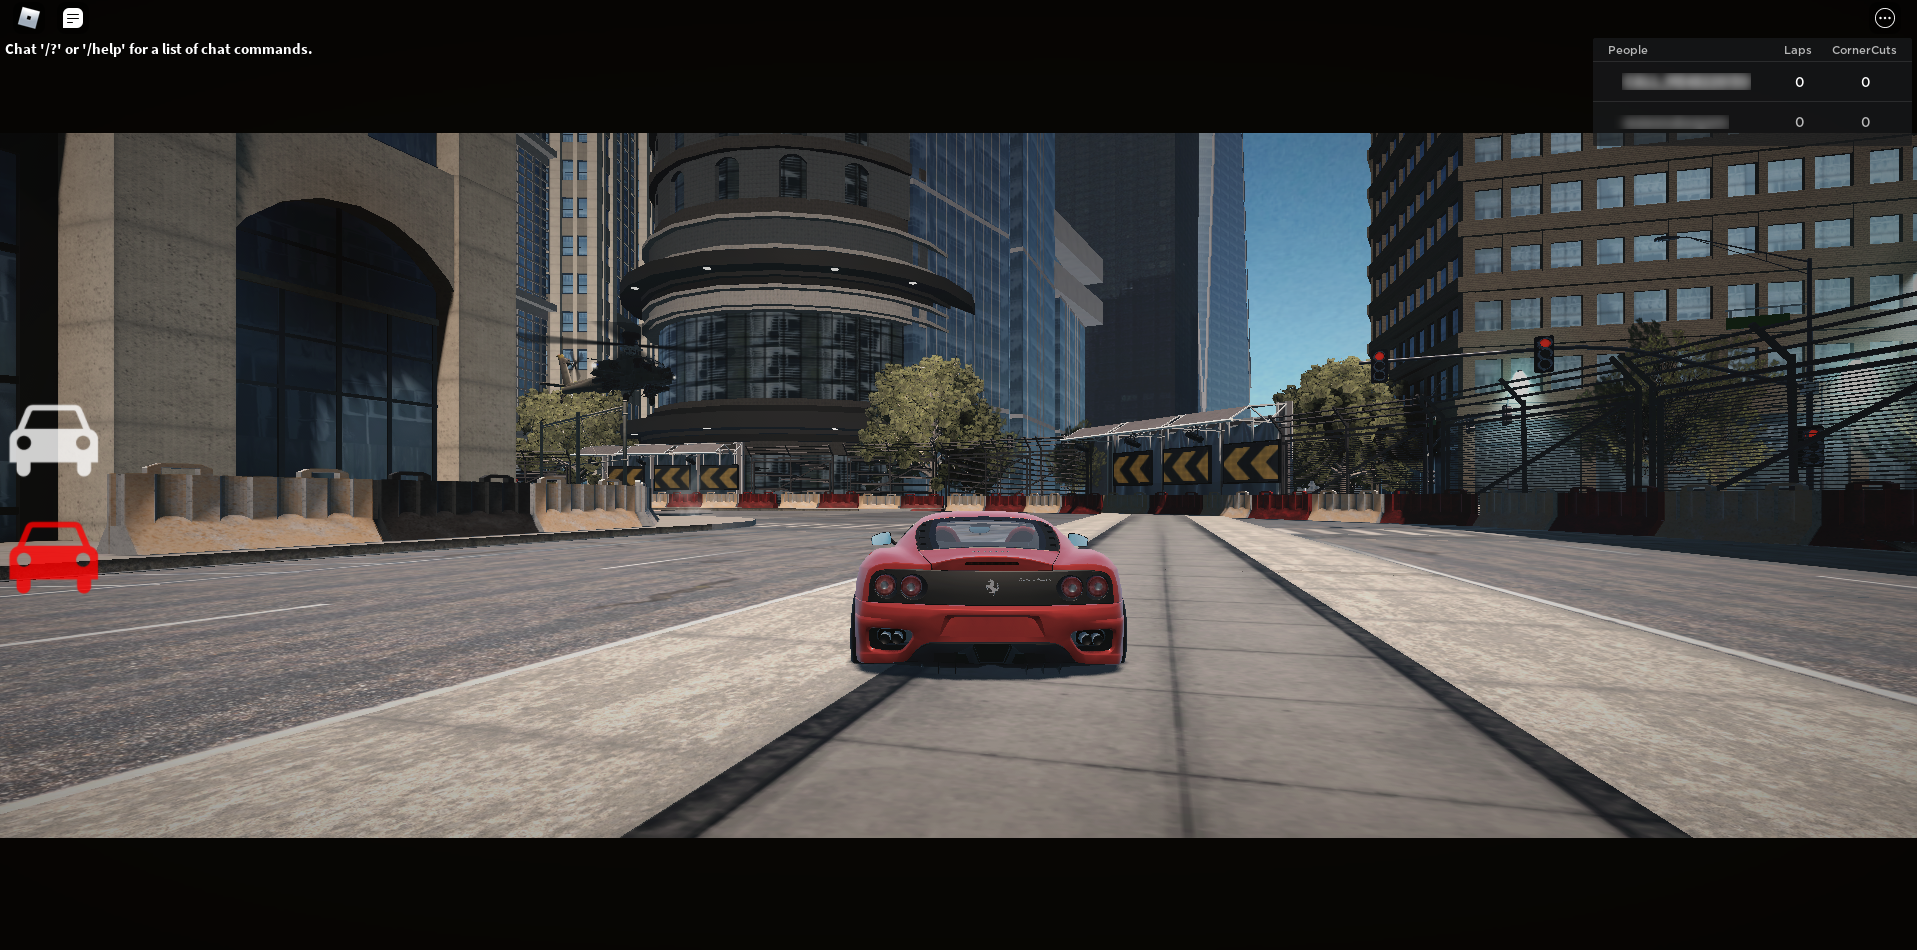 Variasjonen i type spill og plattformer i Roblox er nærmest uendelig, her er skjermdump fra en variant som etterlikner det populære Grand Theft Auto-universet. Foto Roblox Corporation